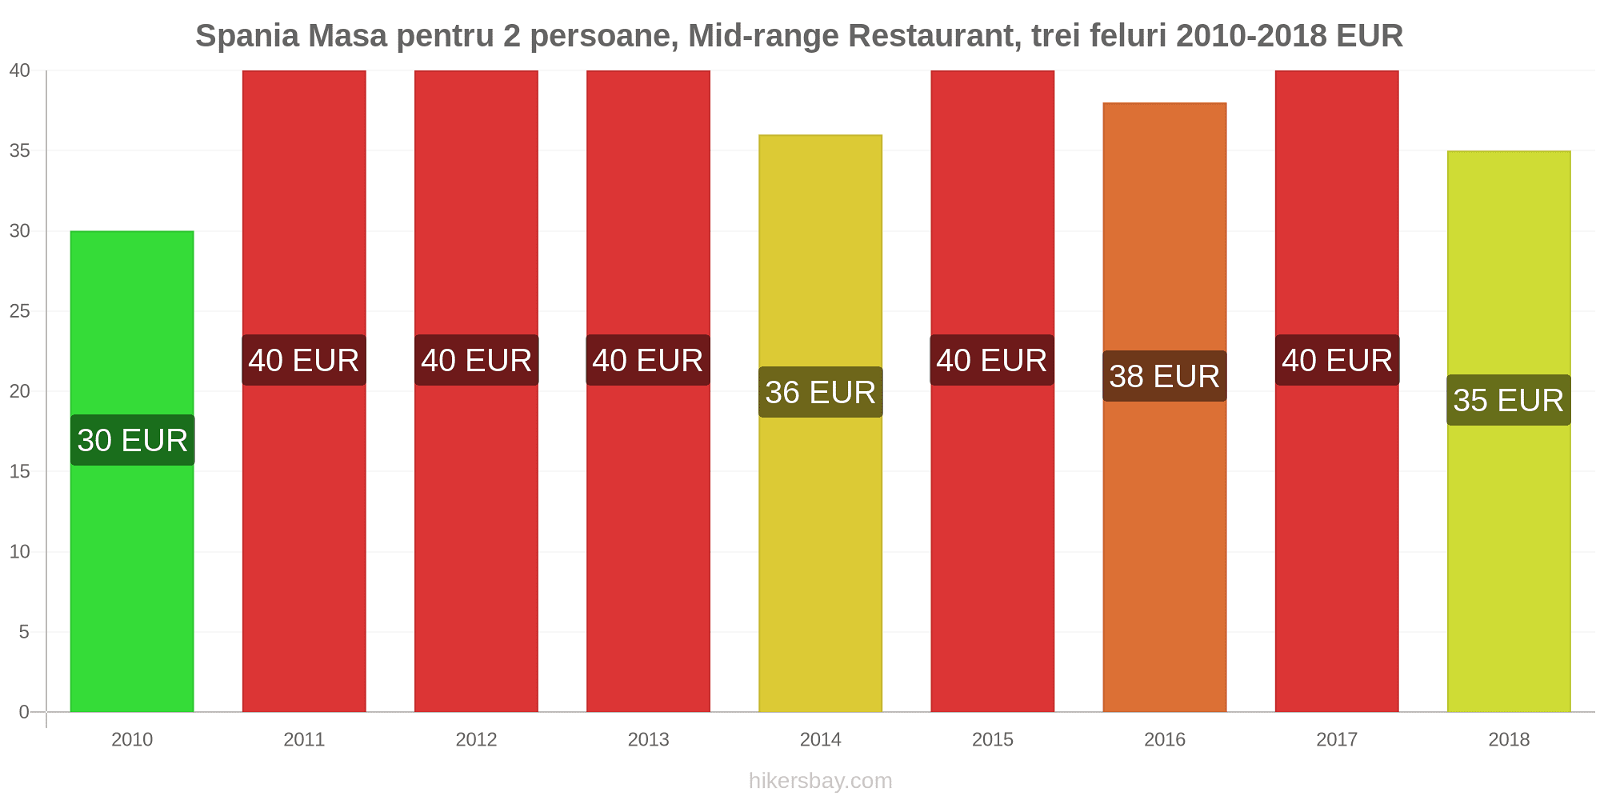 Spania schimbări de prețuri Masă pentru 2 persoane, restaurant de gamă medie, trei feluri de mâncare hikersbay.com